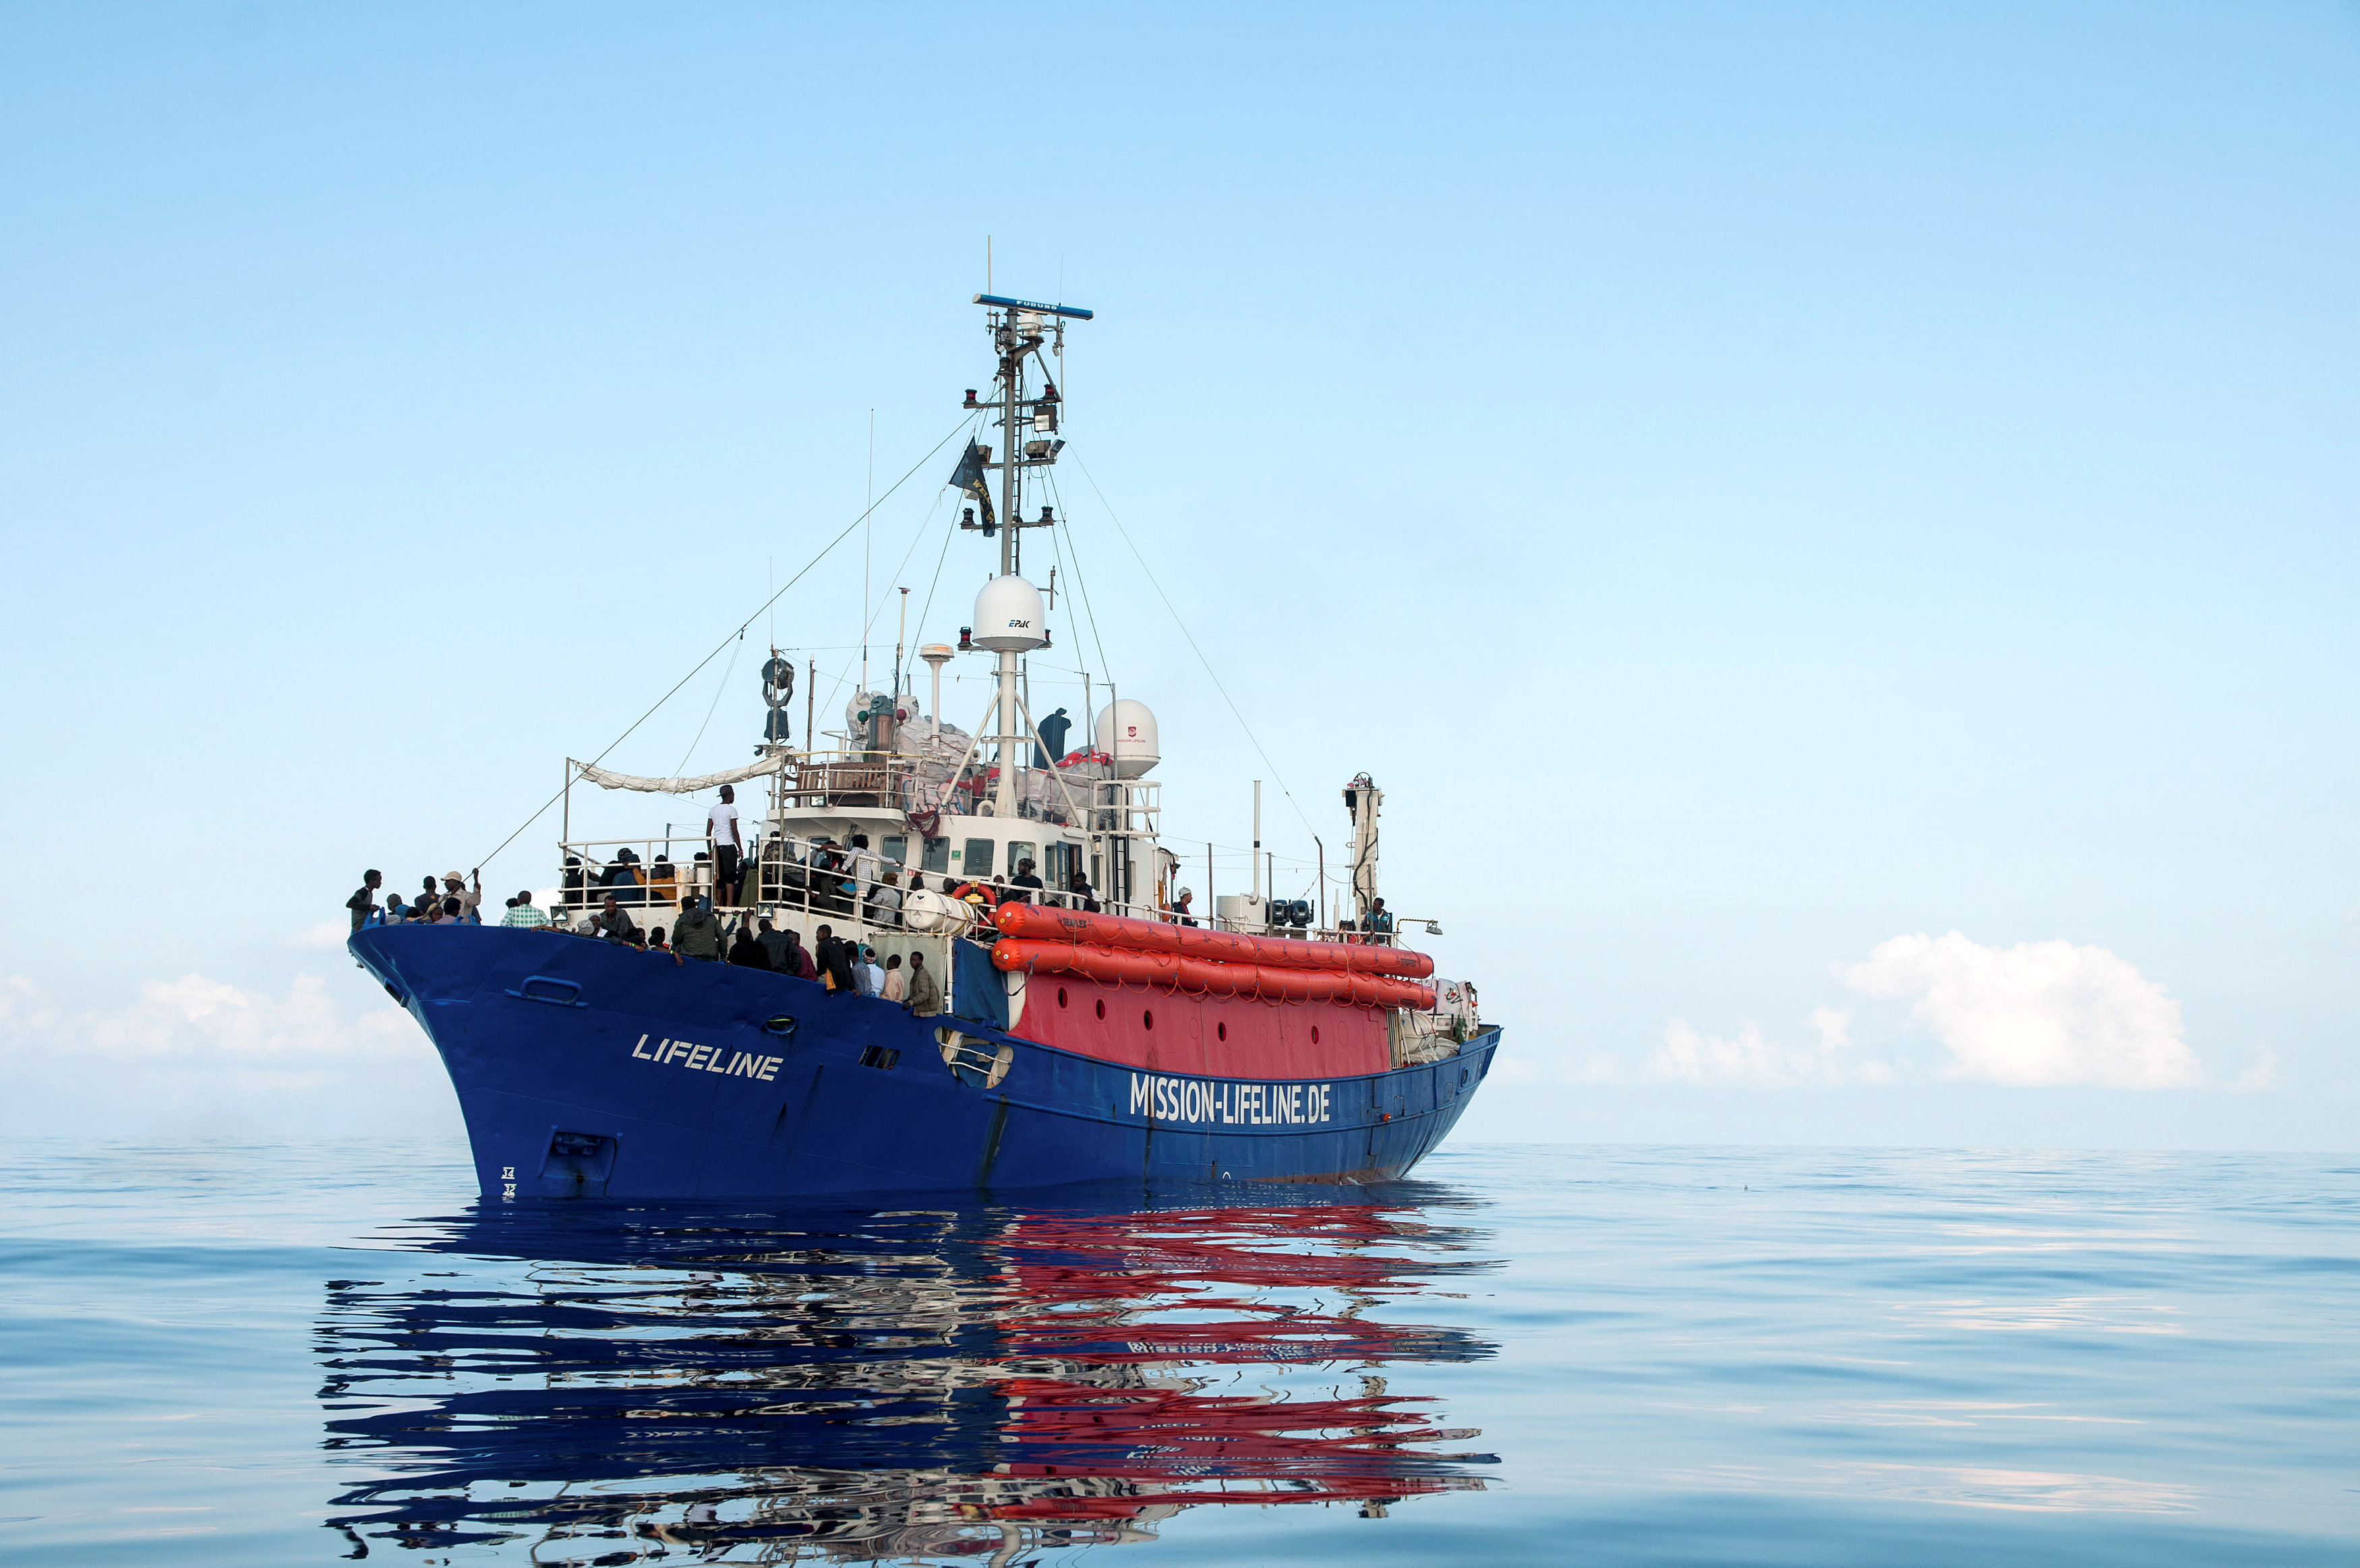 El barco de Lifeline, con 230 migrantes, podría atracar próximamente en Malta